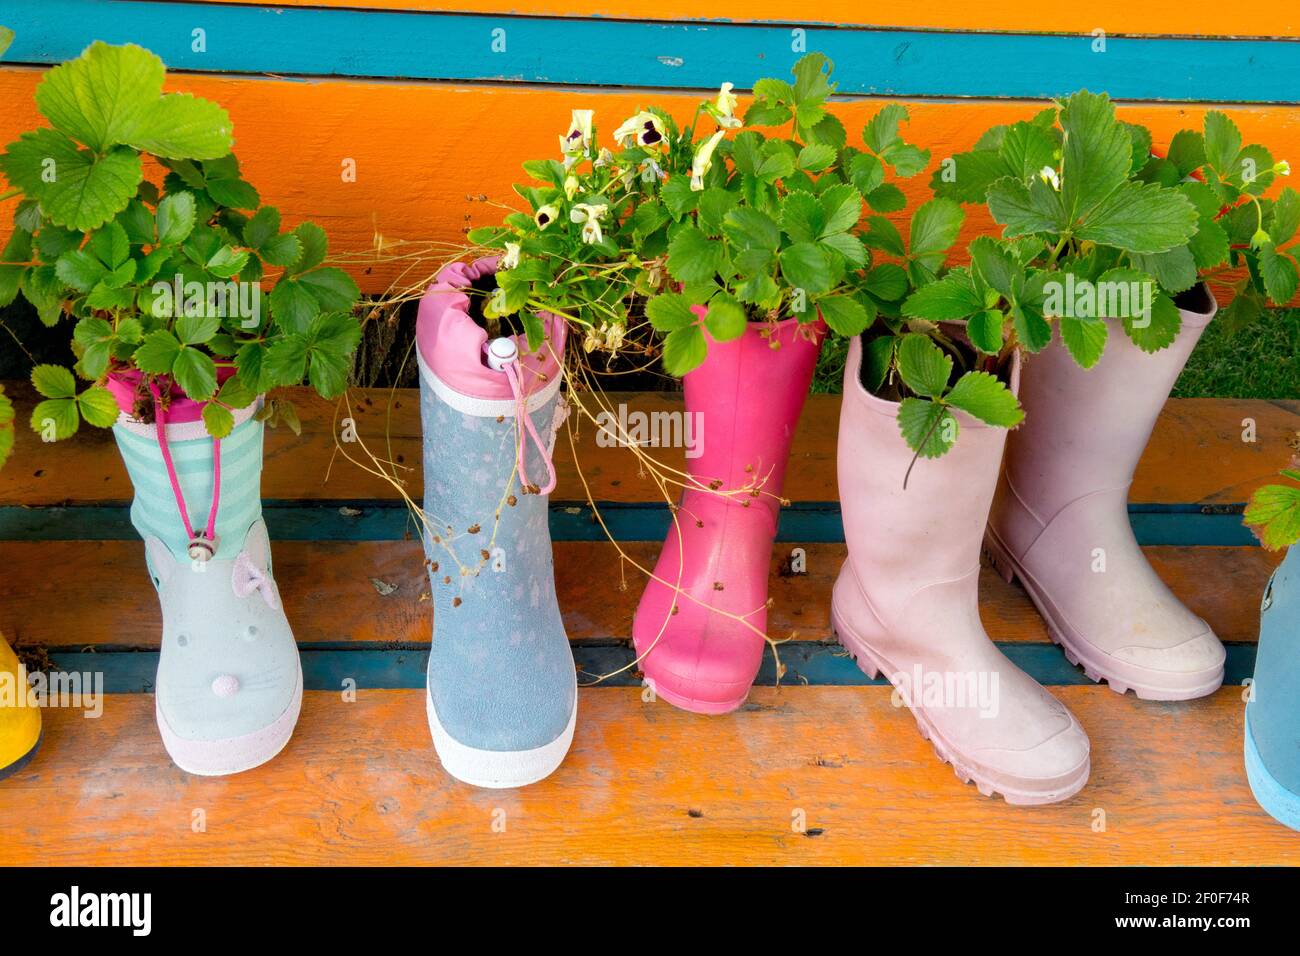 Fraises plante cultivant dans des bottes Wellington en caoutchouc, des chaussures comme des pots alternatifs fleurs plantées dans des bottes Banque D'Images